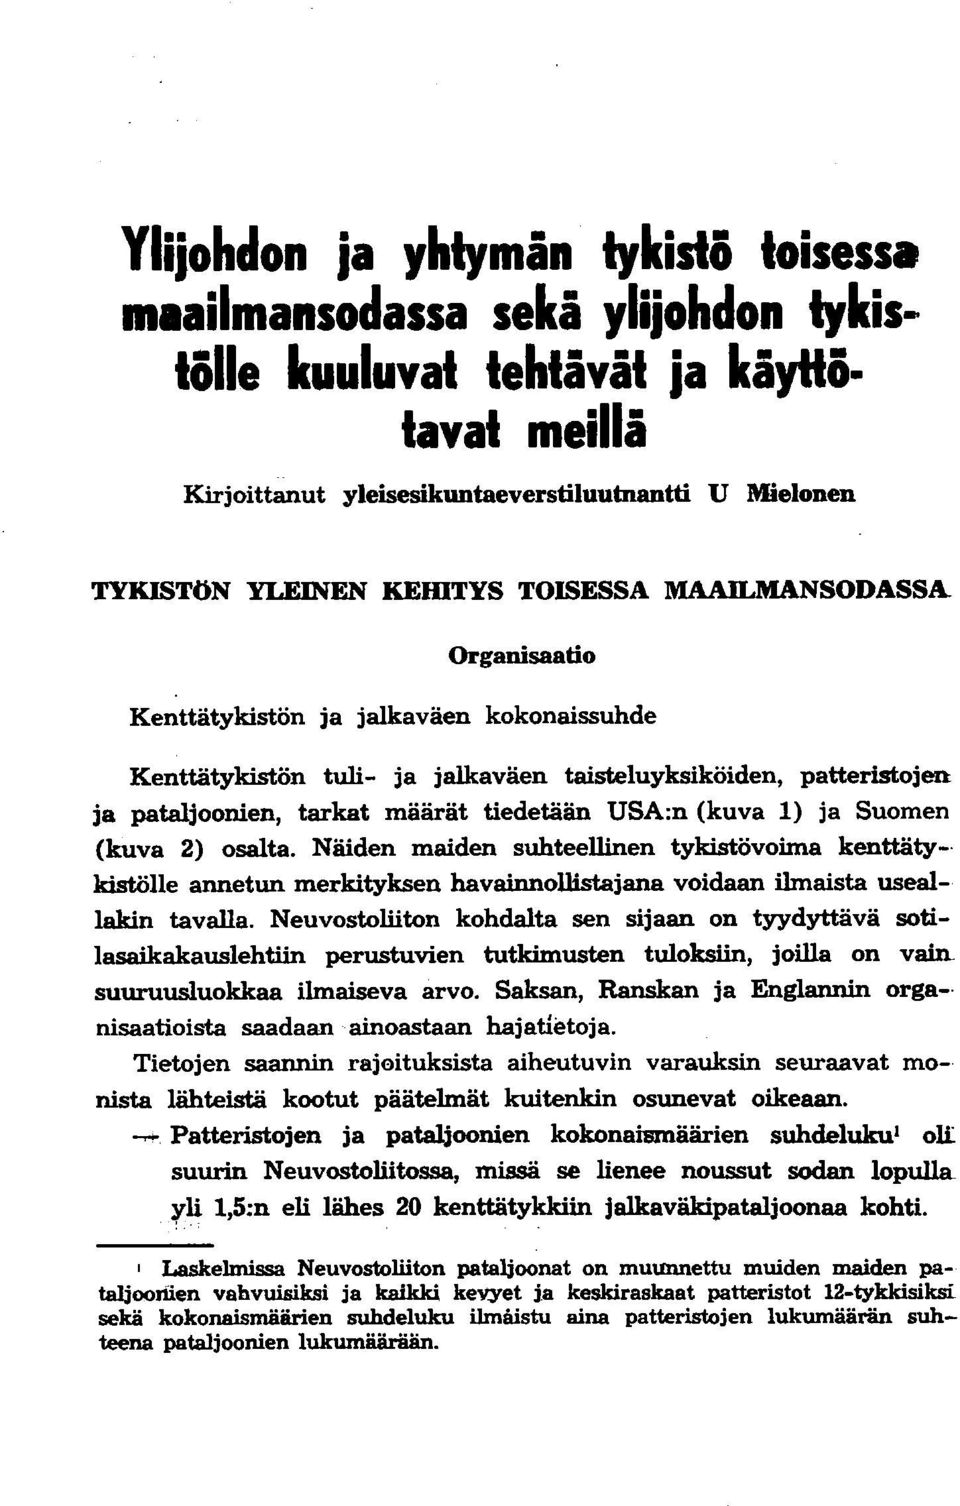 jalkaväen taisteluyksiköiden, patteristojen ja pataljoonien, tarkat määrät tiedetään USA:n (kuva 1) ja Suomen (kuva 2) osalta.